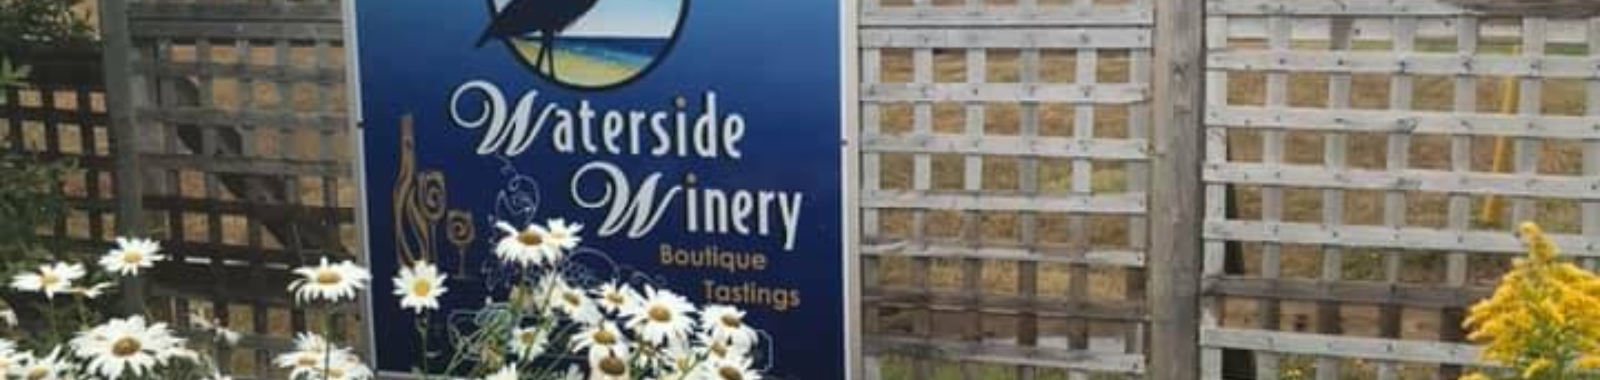 Waterside Winery Header